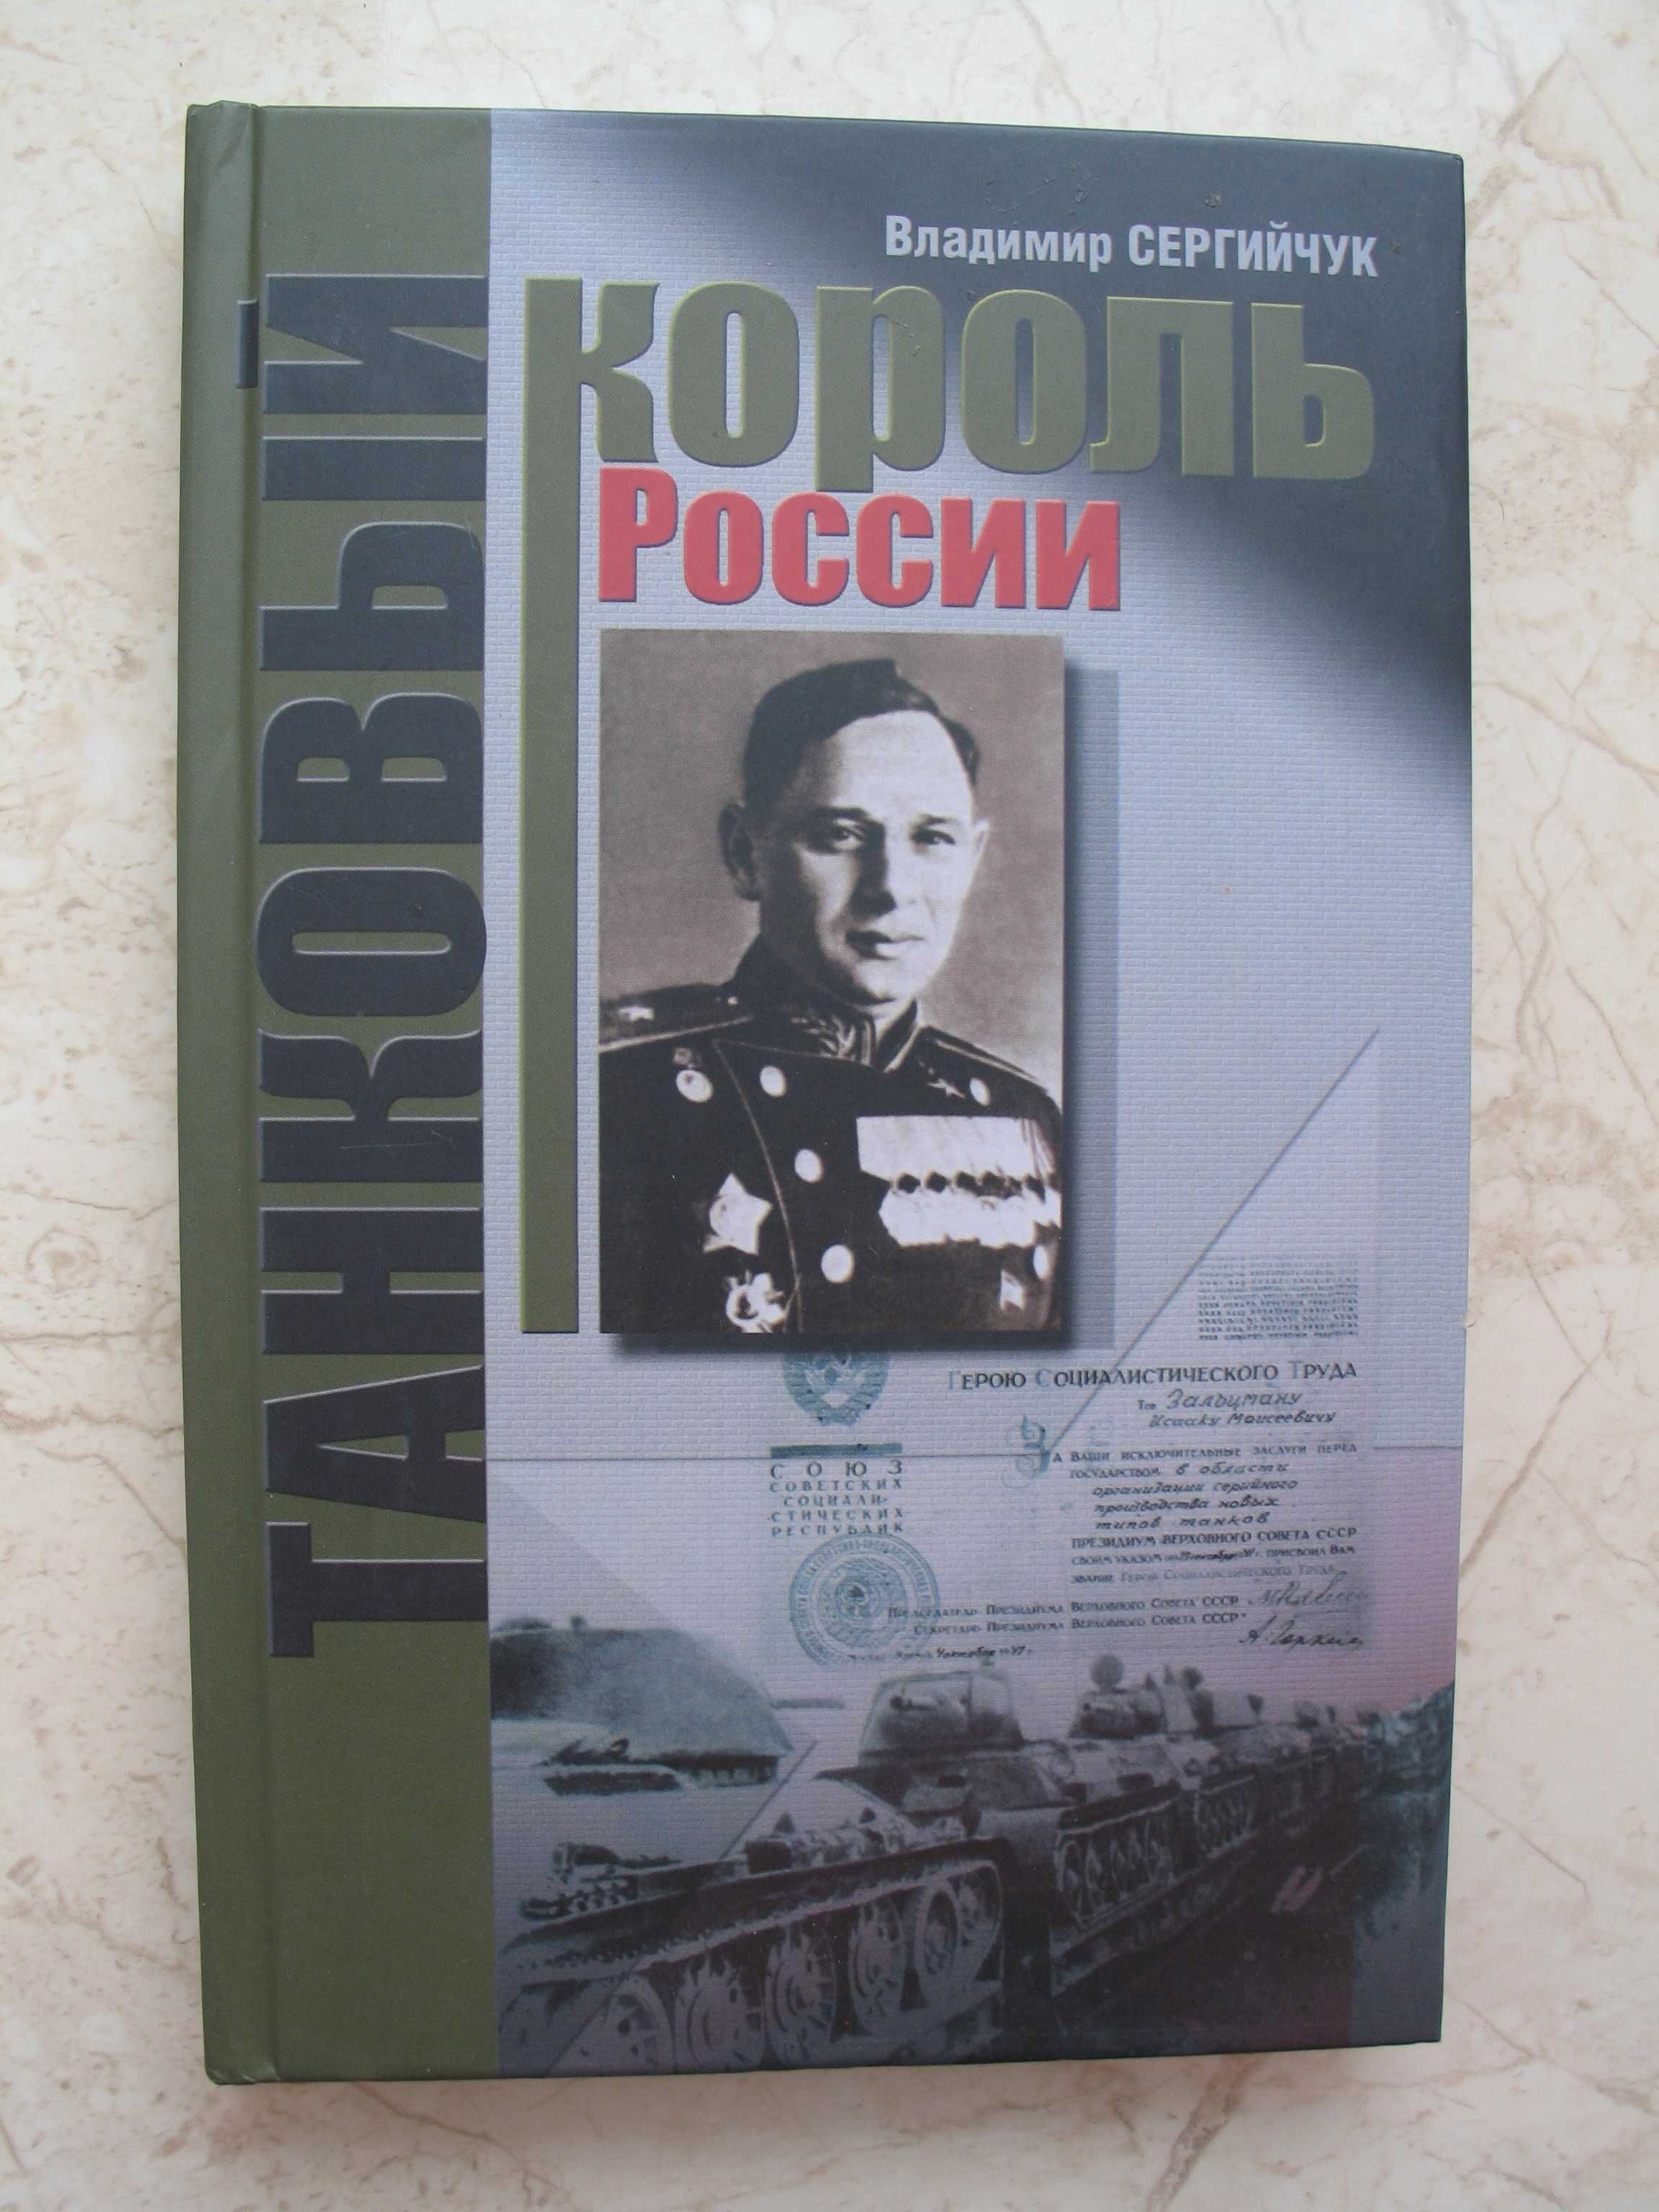 "Танковый король России" Владимир Сергийчук, 2005 год, тираж 1 000